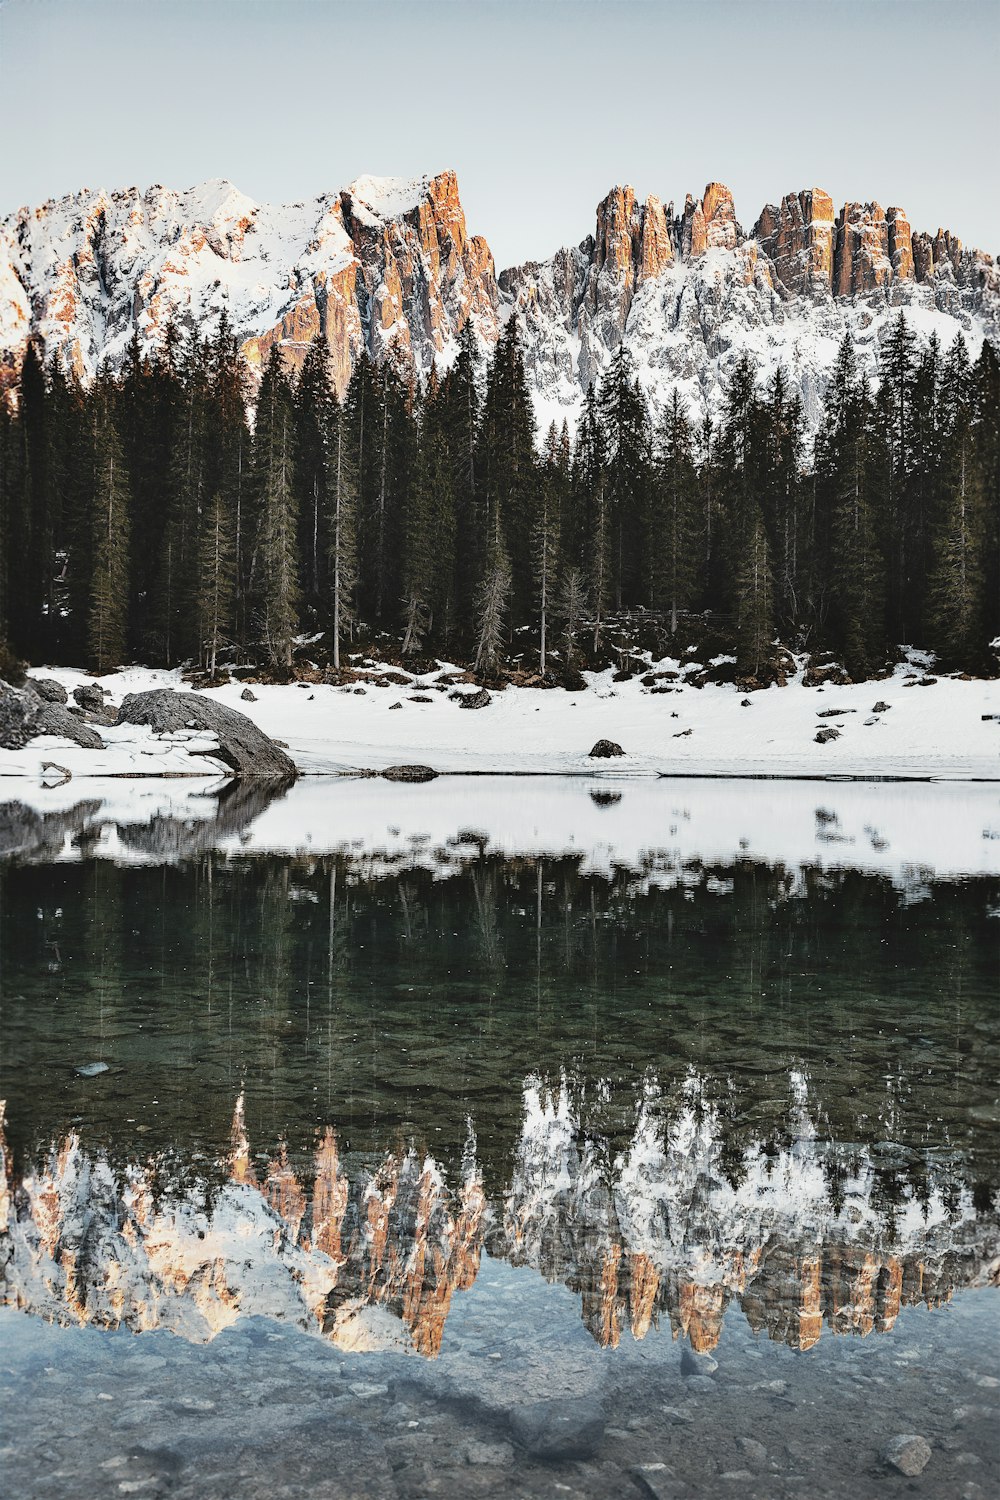 Un lago rodeado de montañas cubiertas de nieve y pinos